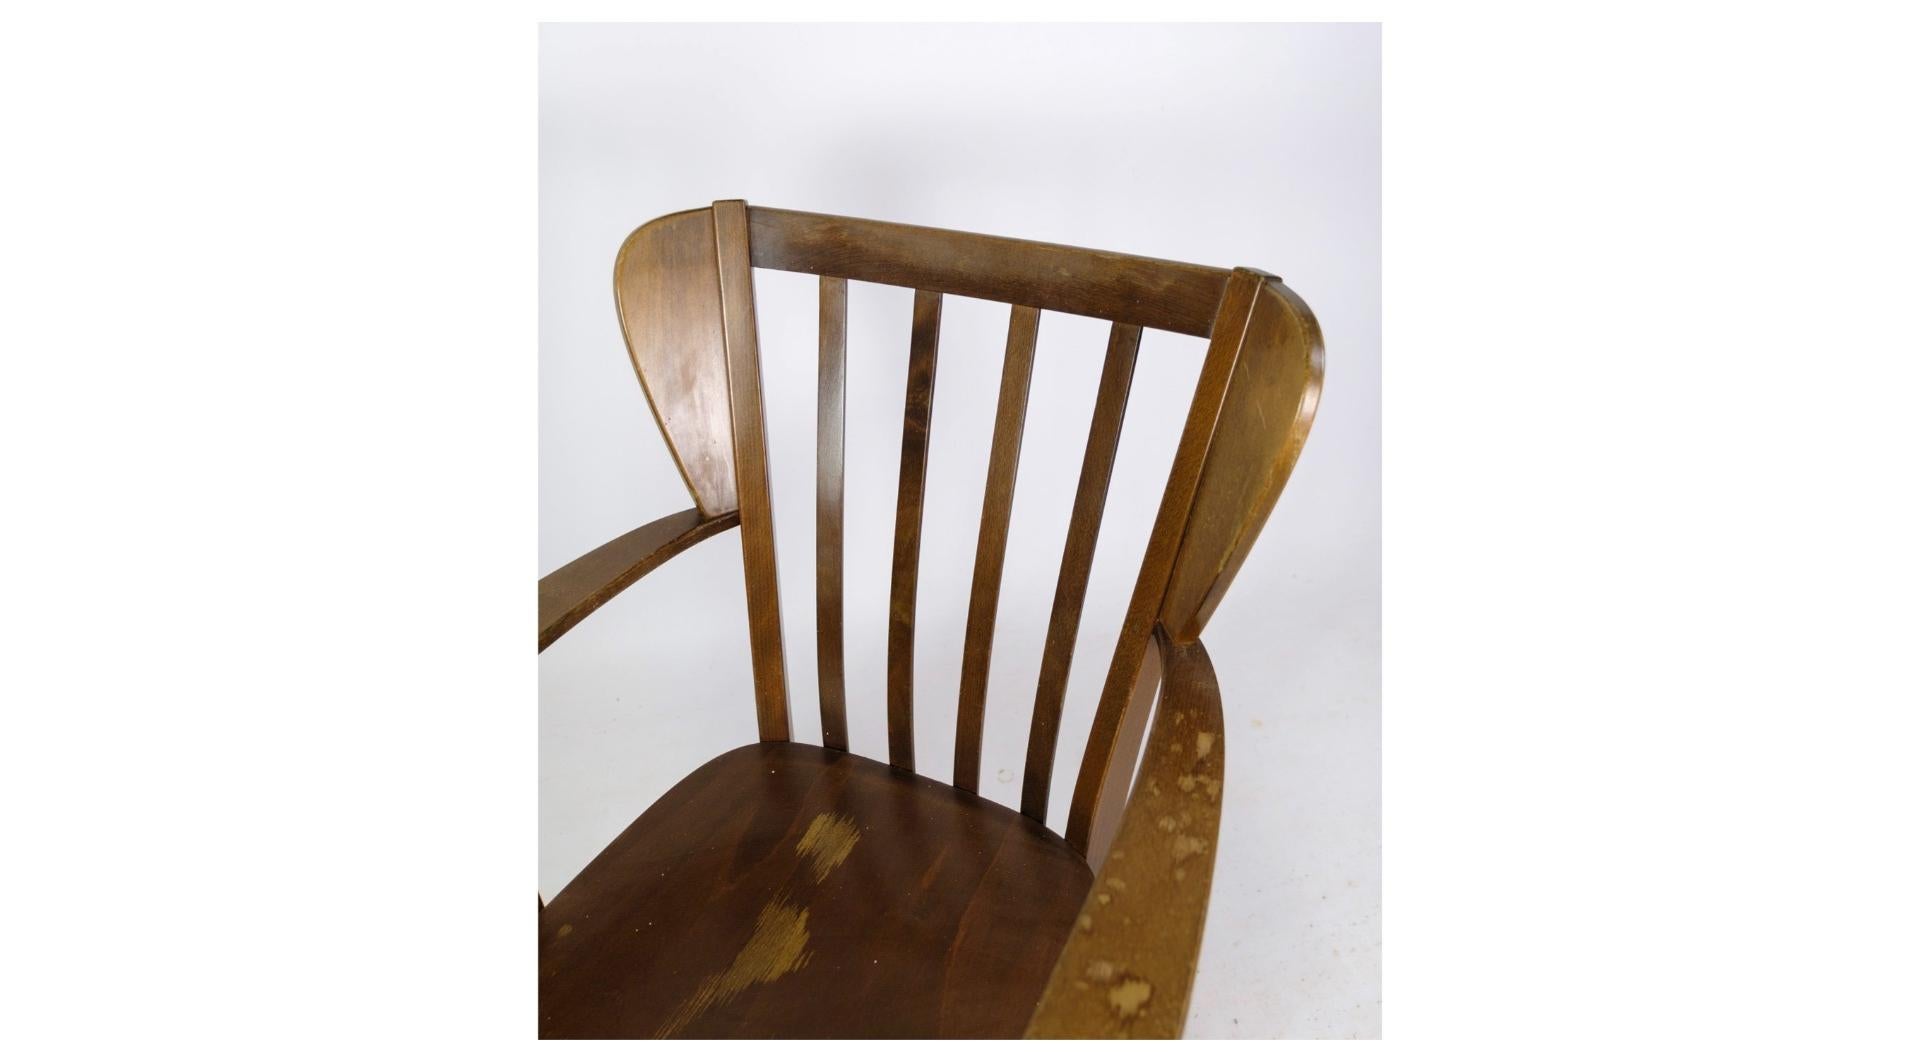 Fabriquée vers les années 1940, la chaise Canada, modèle 2252, témoigne de l'élégance intemporelle du design danois. Conçue par Søren Hansen et minutieusement fabriquée par Fritz Hansen, cette chaise incarne la fusion de la forme et de la fonction